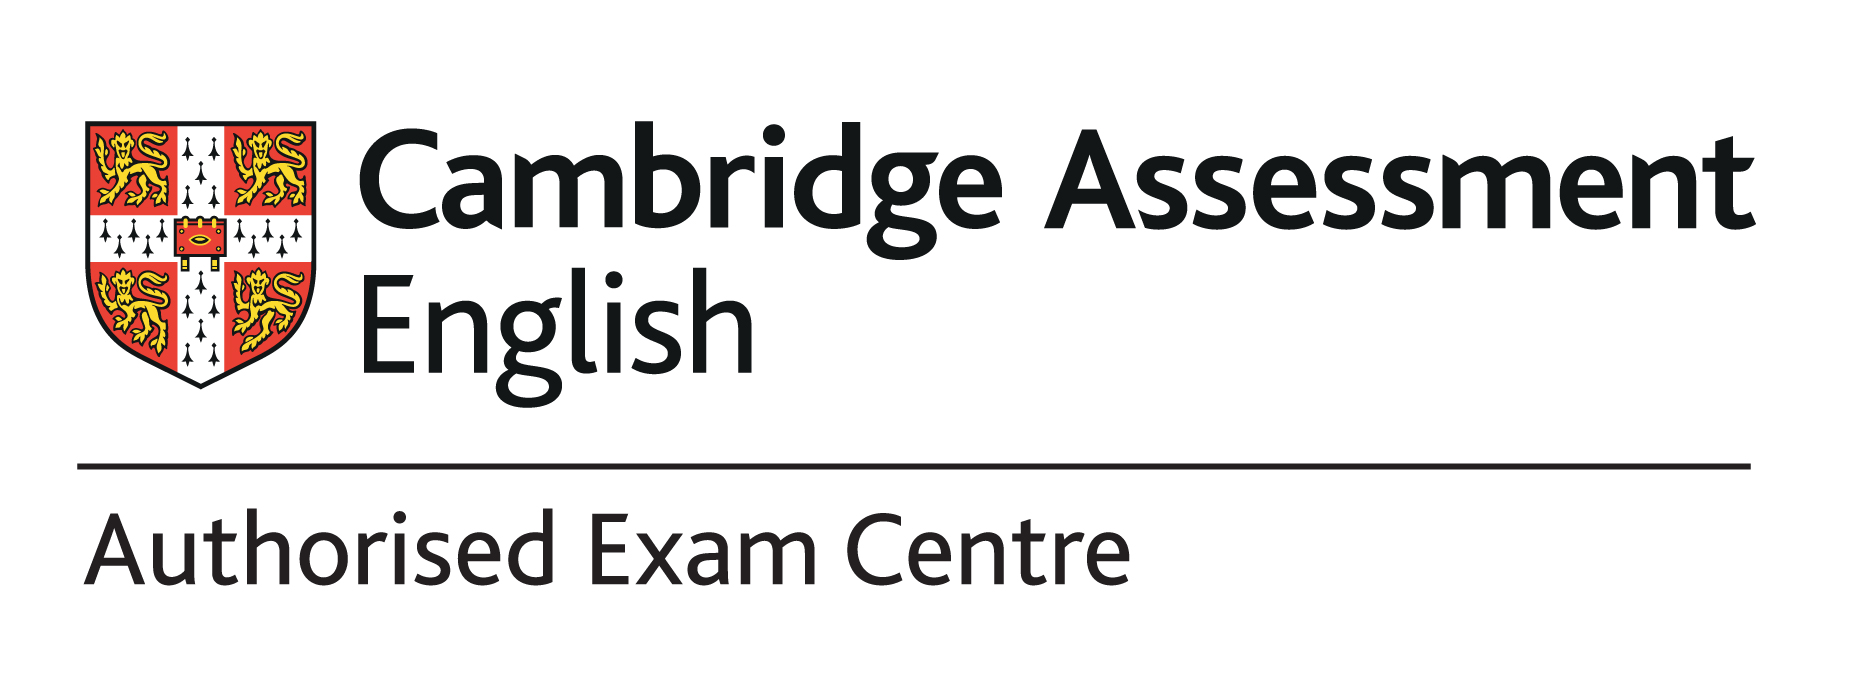 Authorised exam centre logo RGB